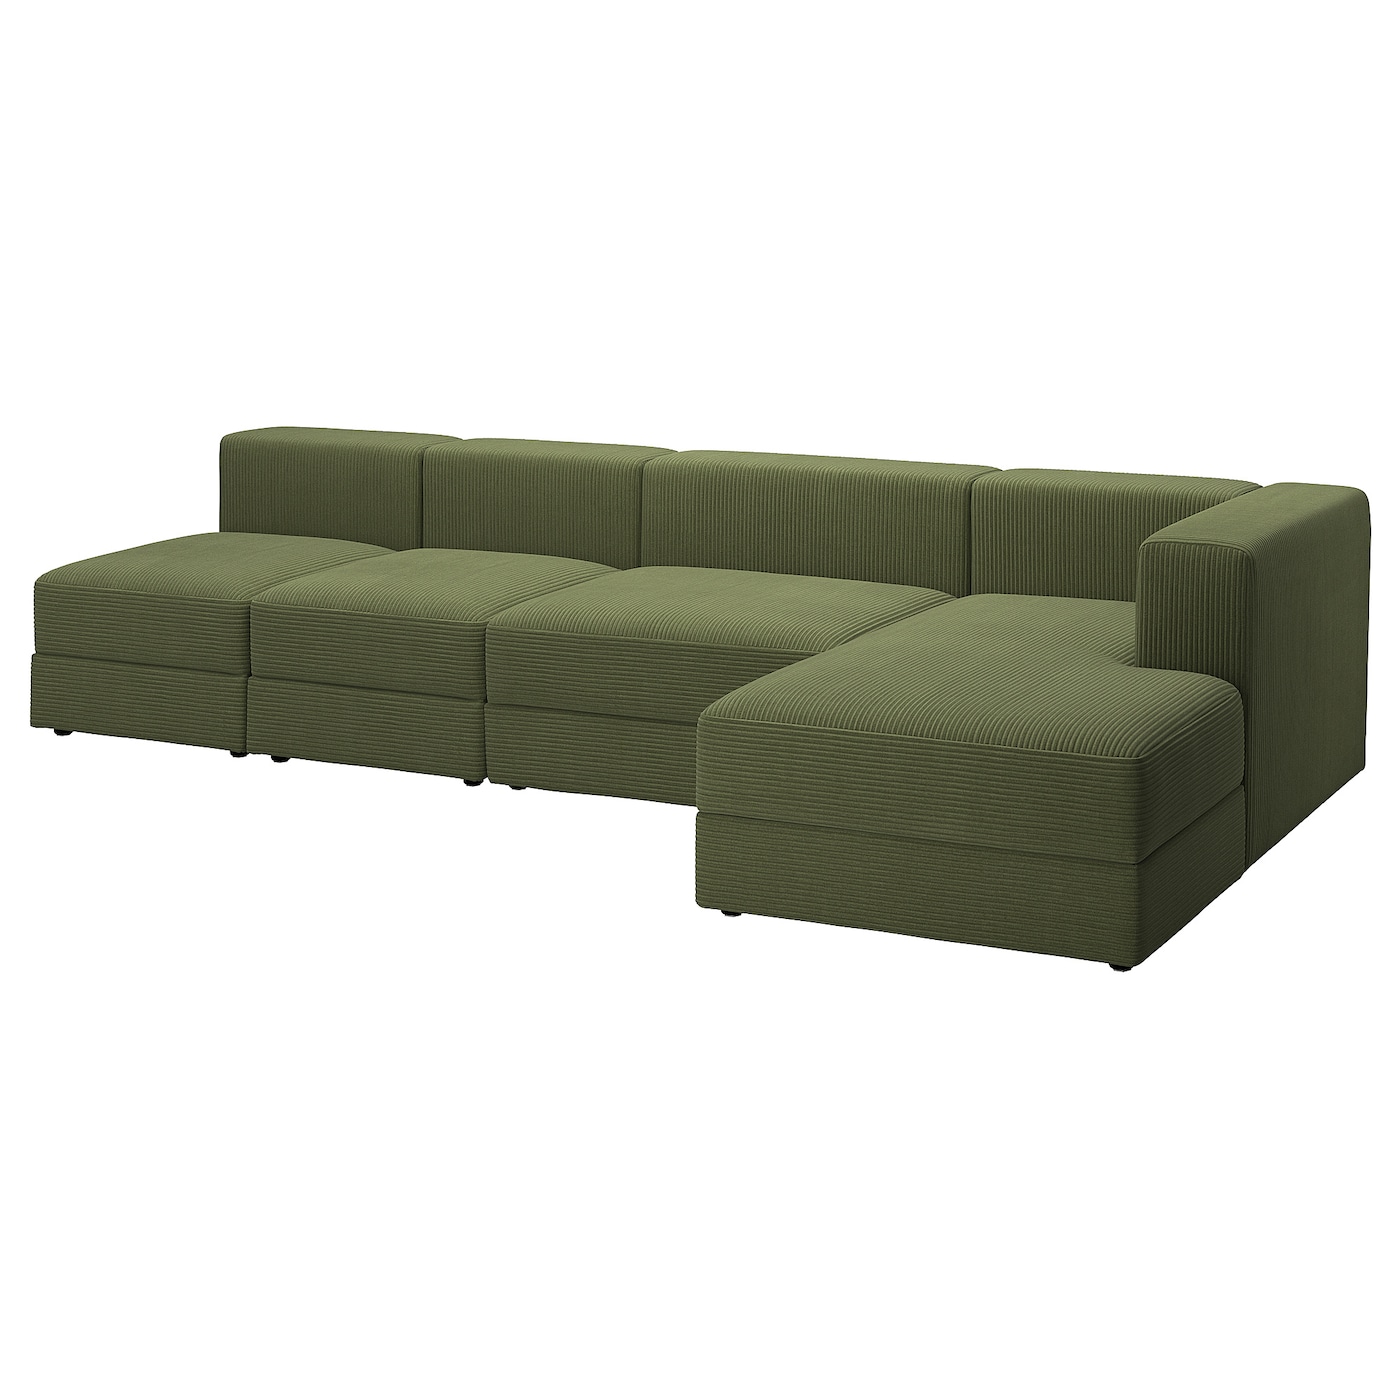 модульный диван ramart design мерсер премиум ultra ivory правый ДЖЭТТЕБО 5-местный диван + диван, правый/Самсала темно-желто-зеленый JÄTTEBO IKEA